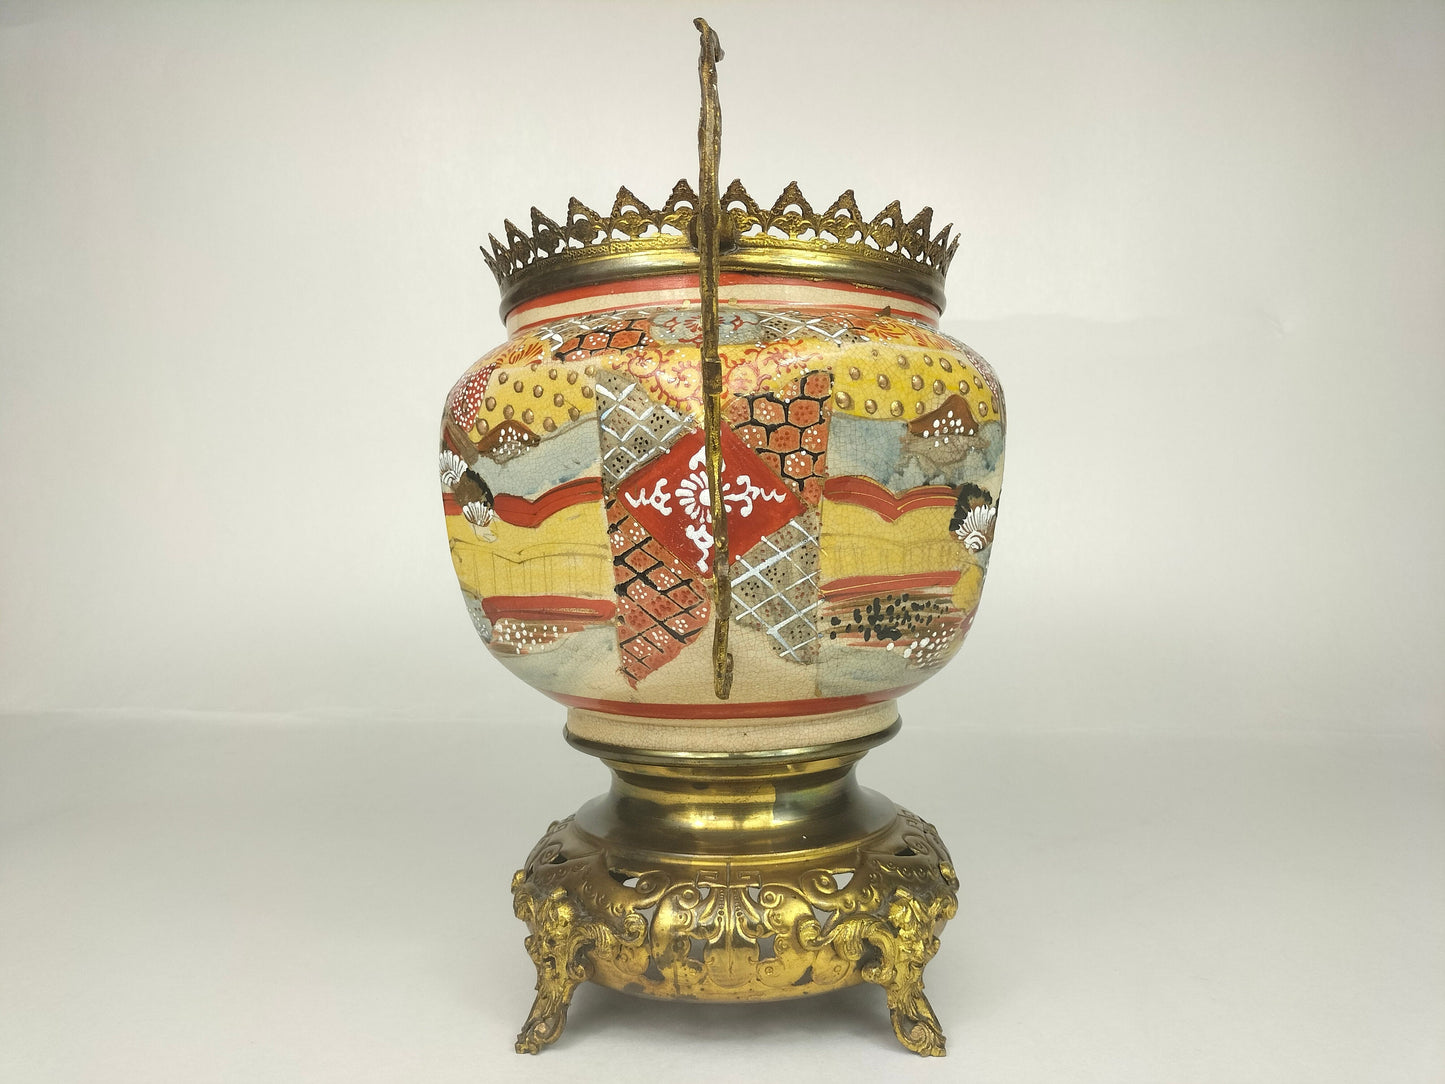 Antigo jarro japonês de satsuma decorado com latão dourado // Século XIX - Período Meiji